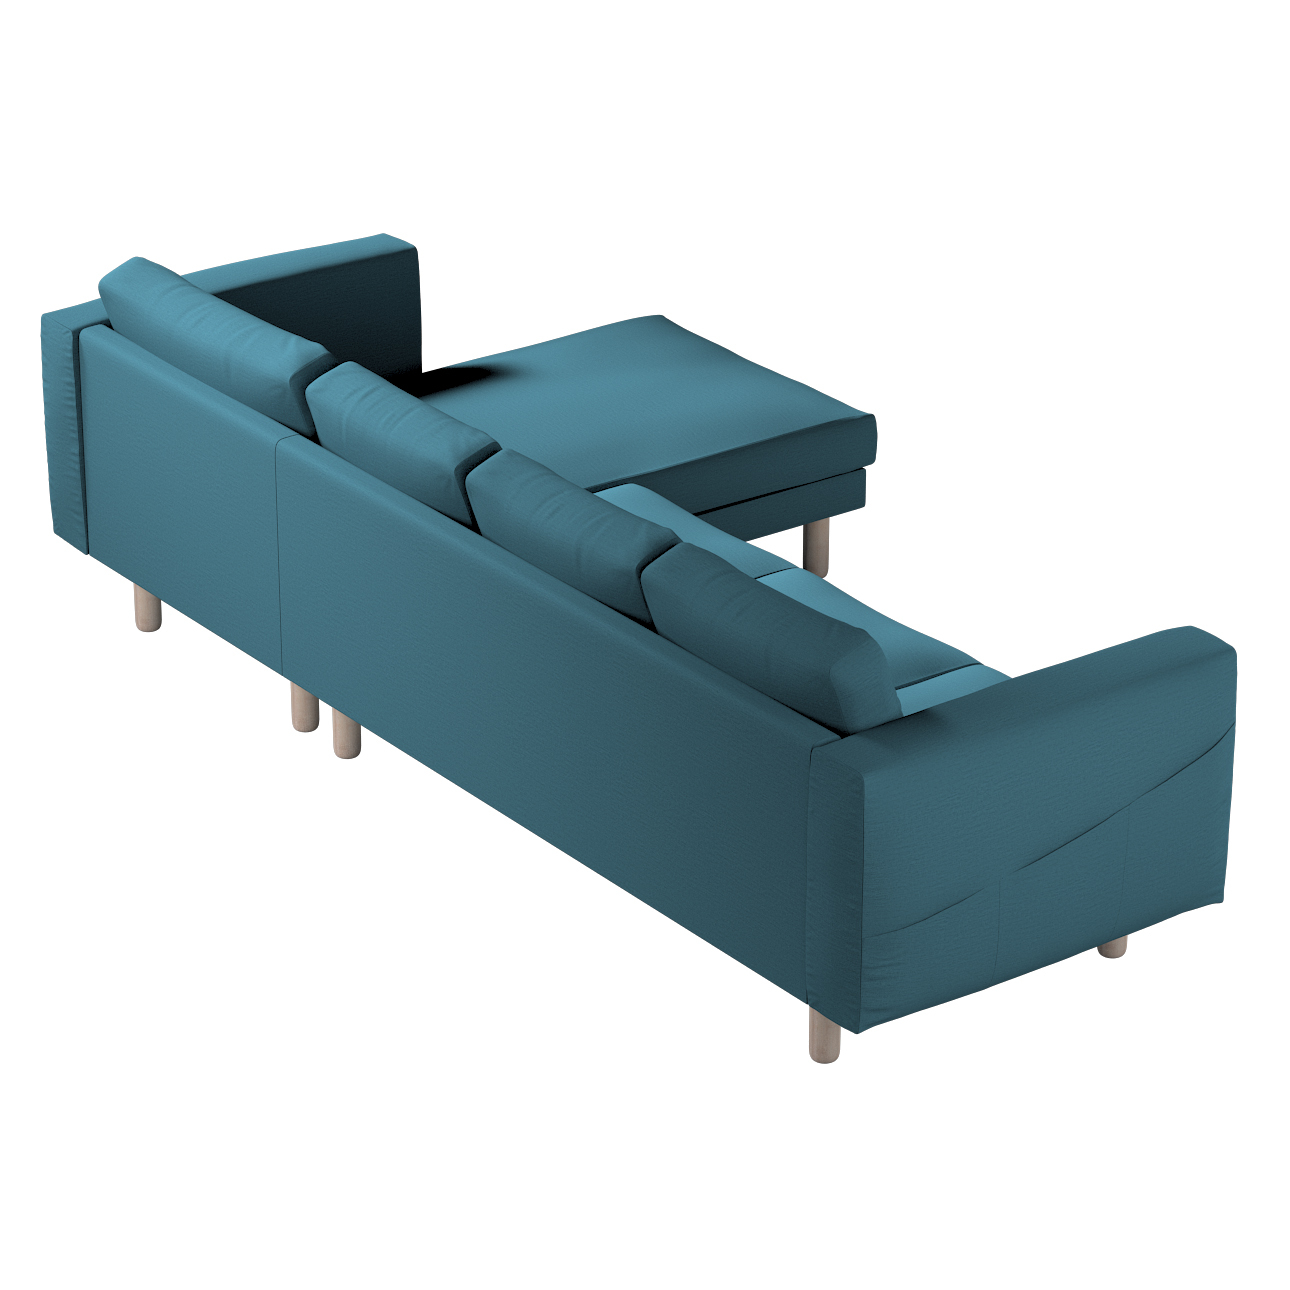 Bezug für Norsborg 4-Sitzer Sofa mit Recamiere, dunkelblau, Norsborg Bezug günstig online kaufen